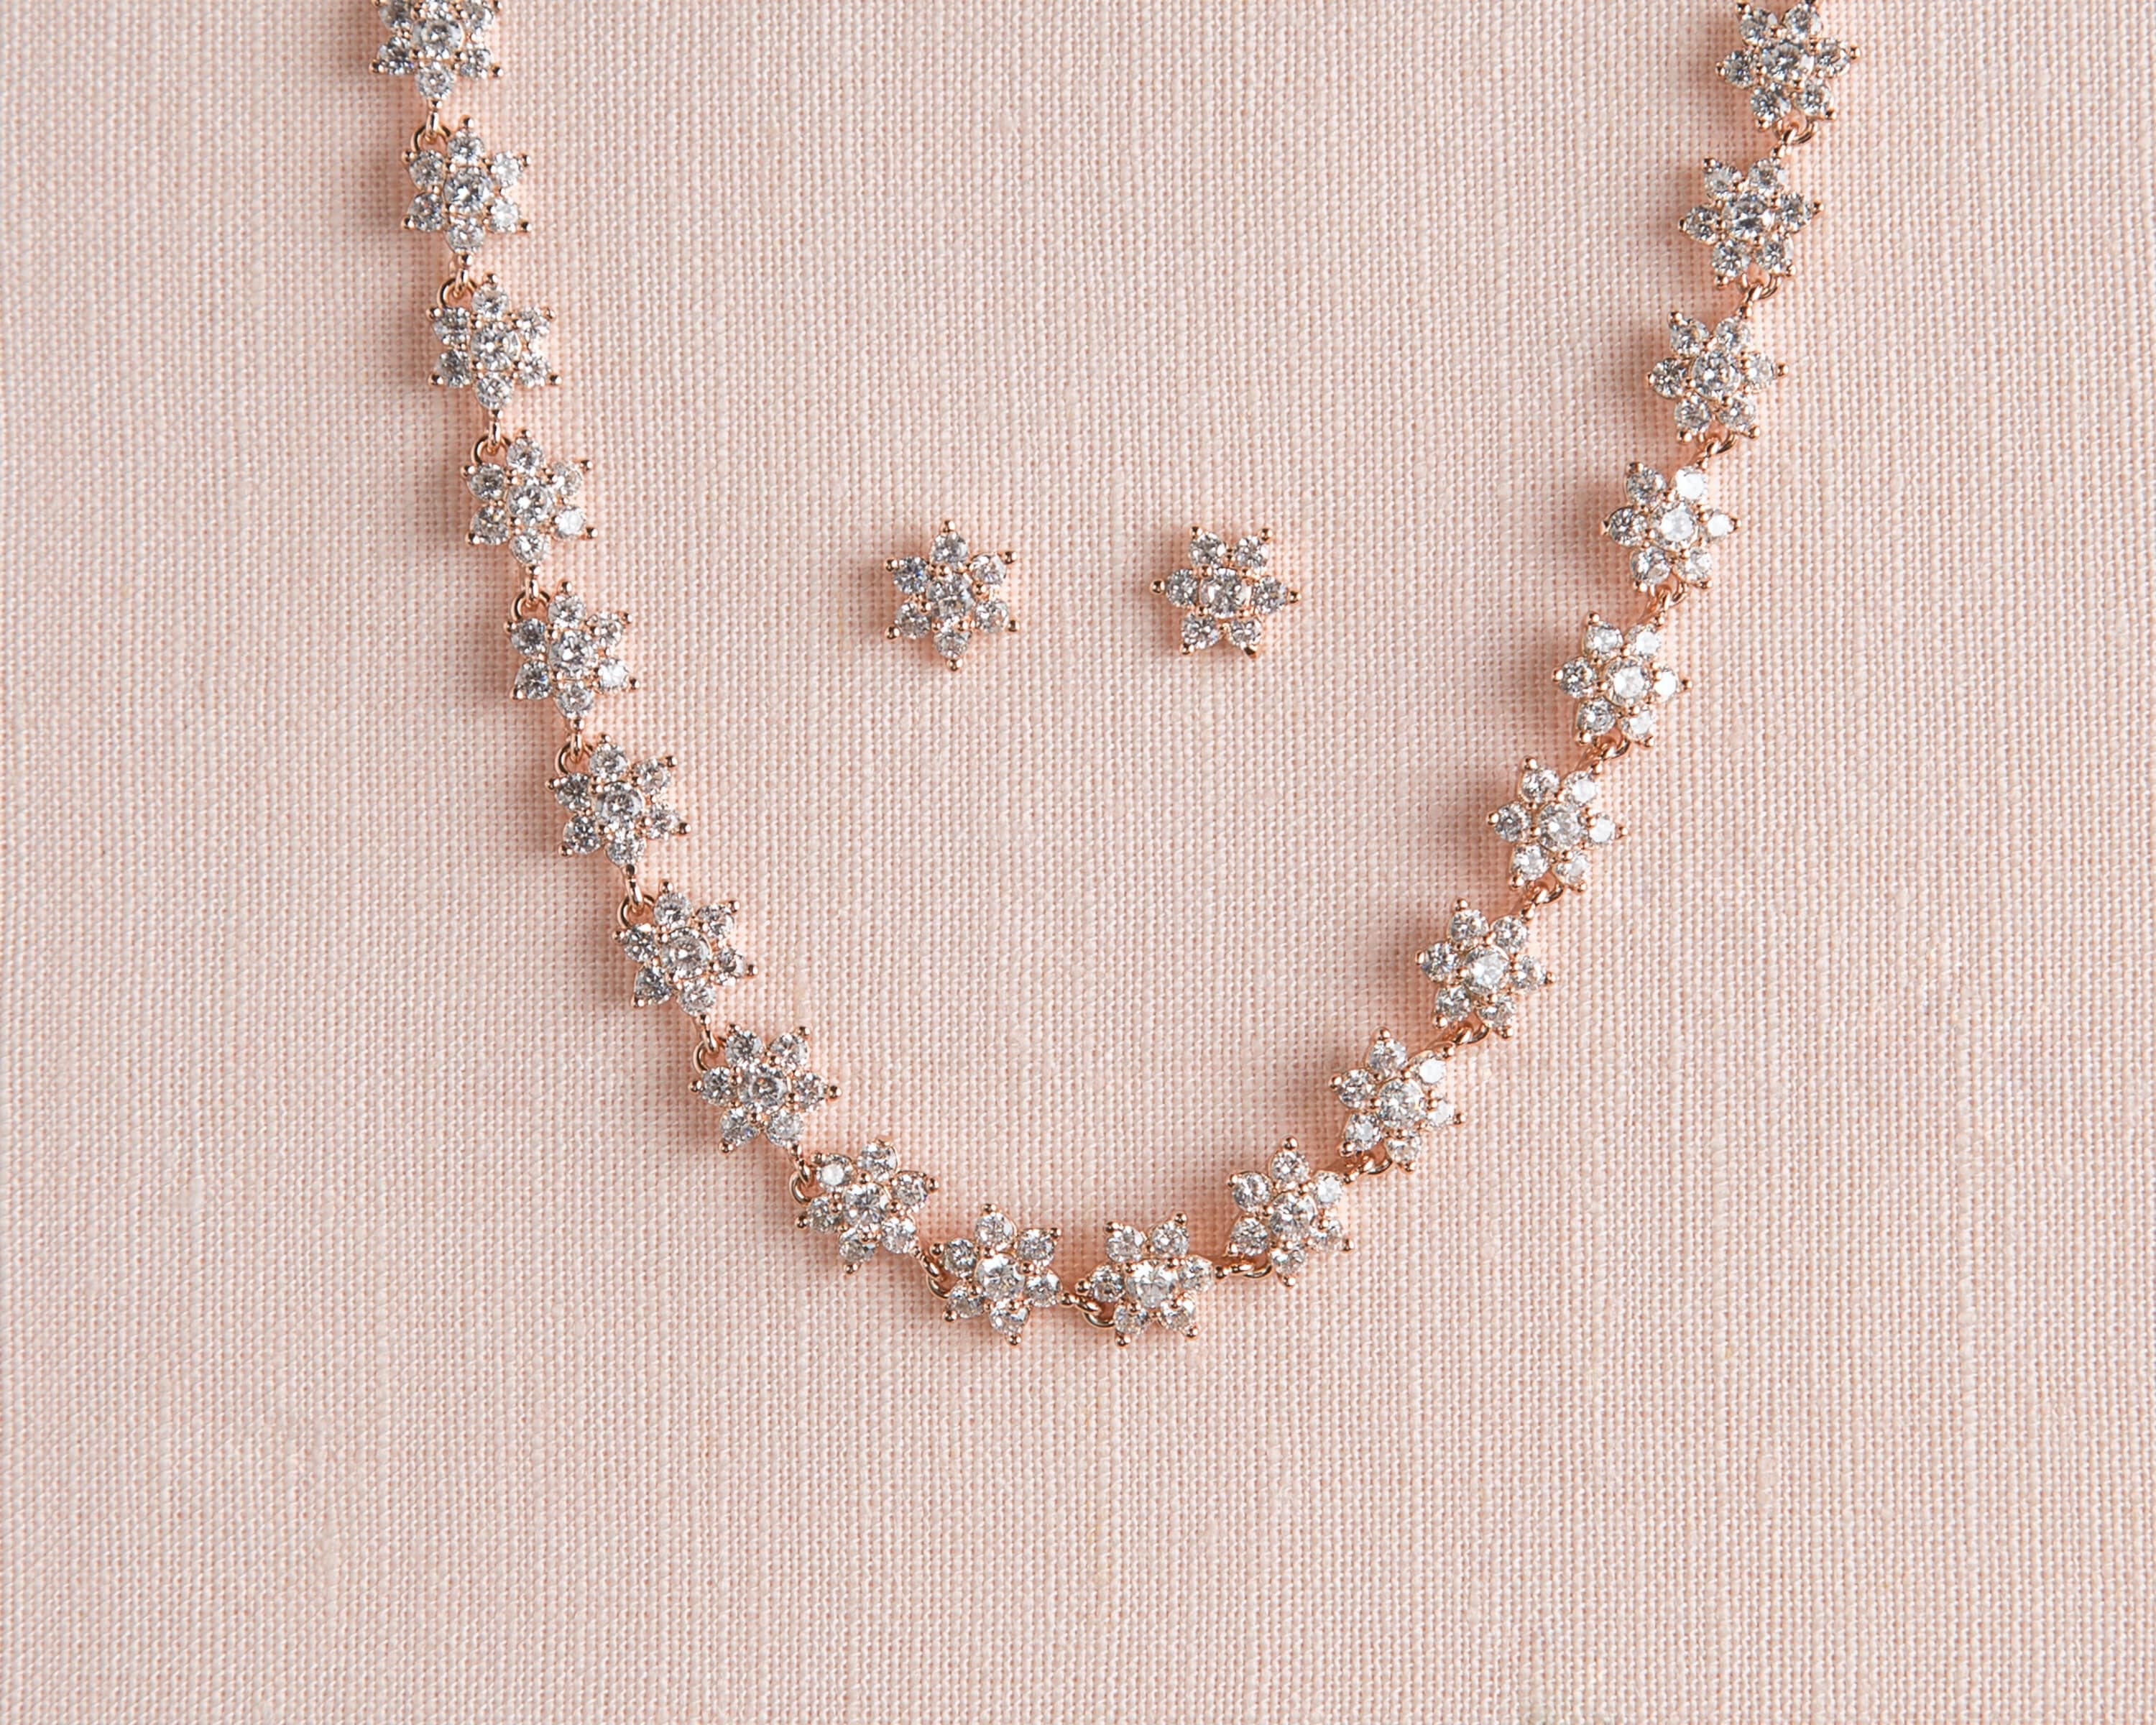 My Flower Chain Earrings S00 - Women - Fashion Jewelry